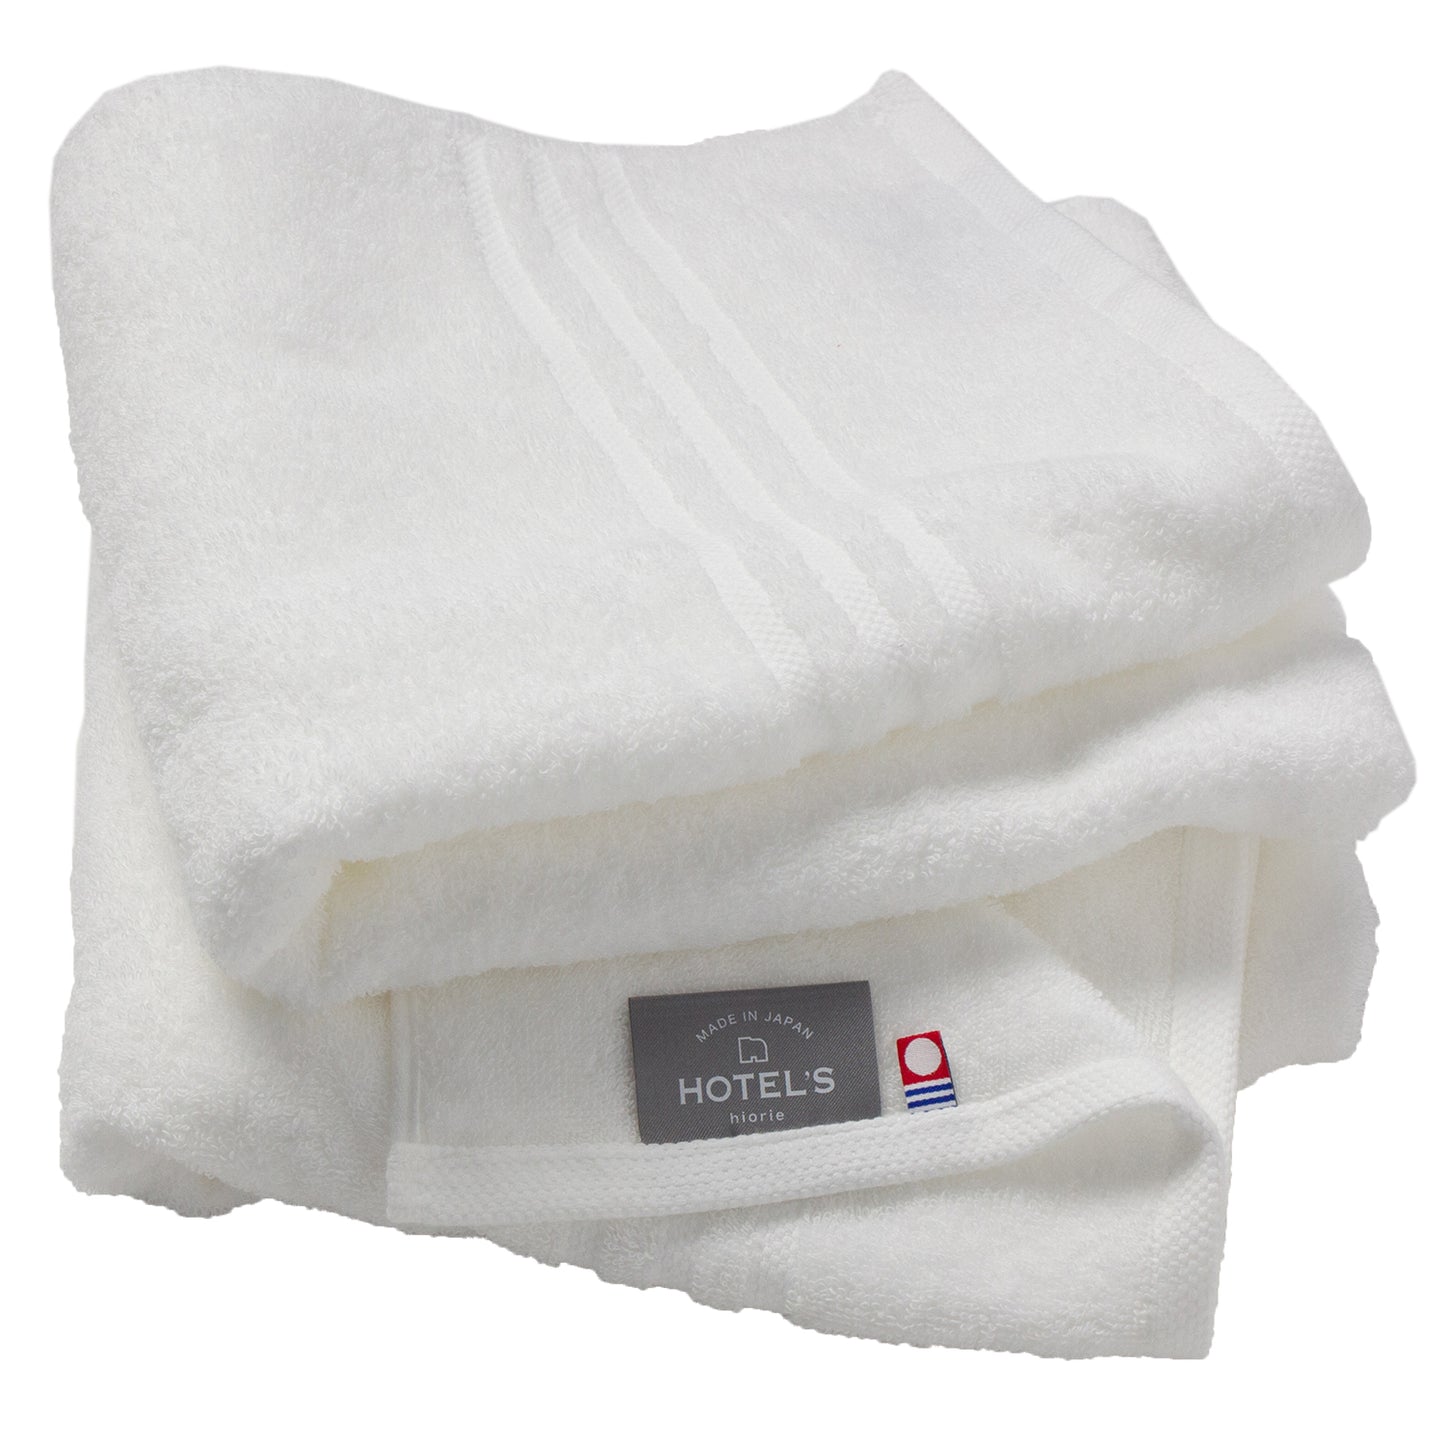 Hiorie Imabari – serviette de bain douce et moelleuse pour hôtel, 2 feuilles de coton, japon